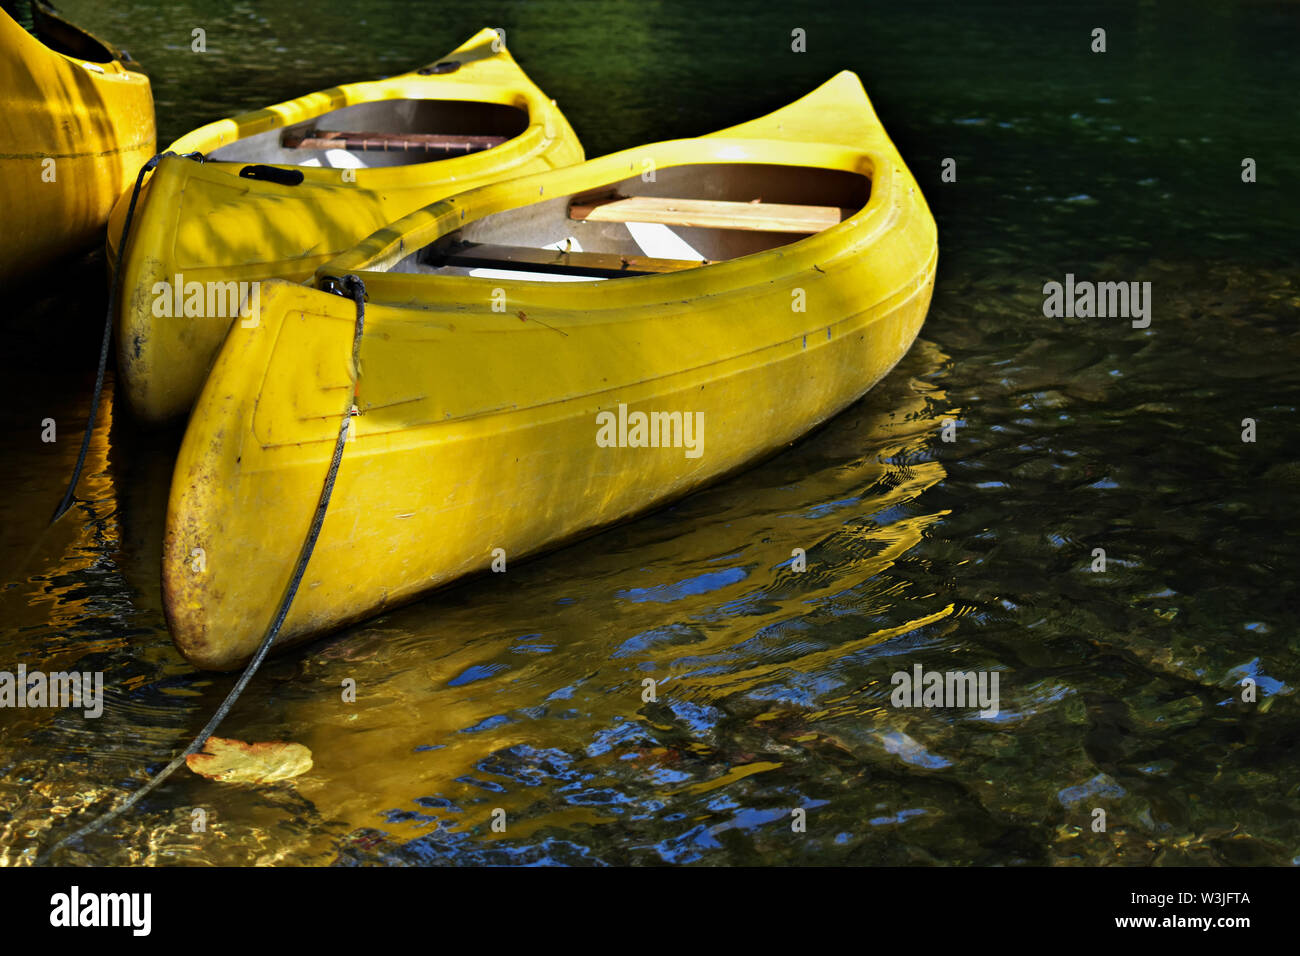 Kajakfahren auf stille Wasser/Gelb Kajak am schönen Green River/konzeptionellen Bild von Sport und Erholung - Bild Stockfoto